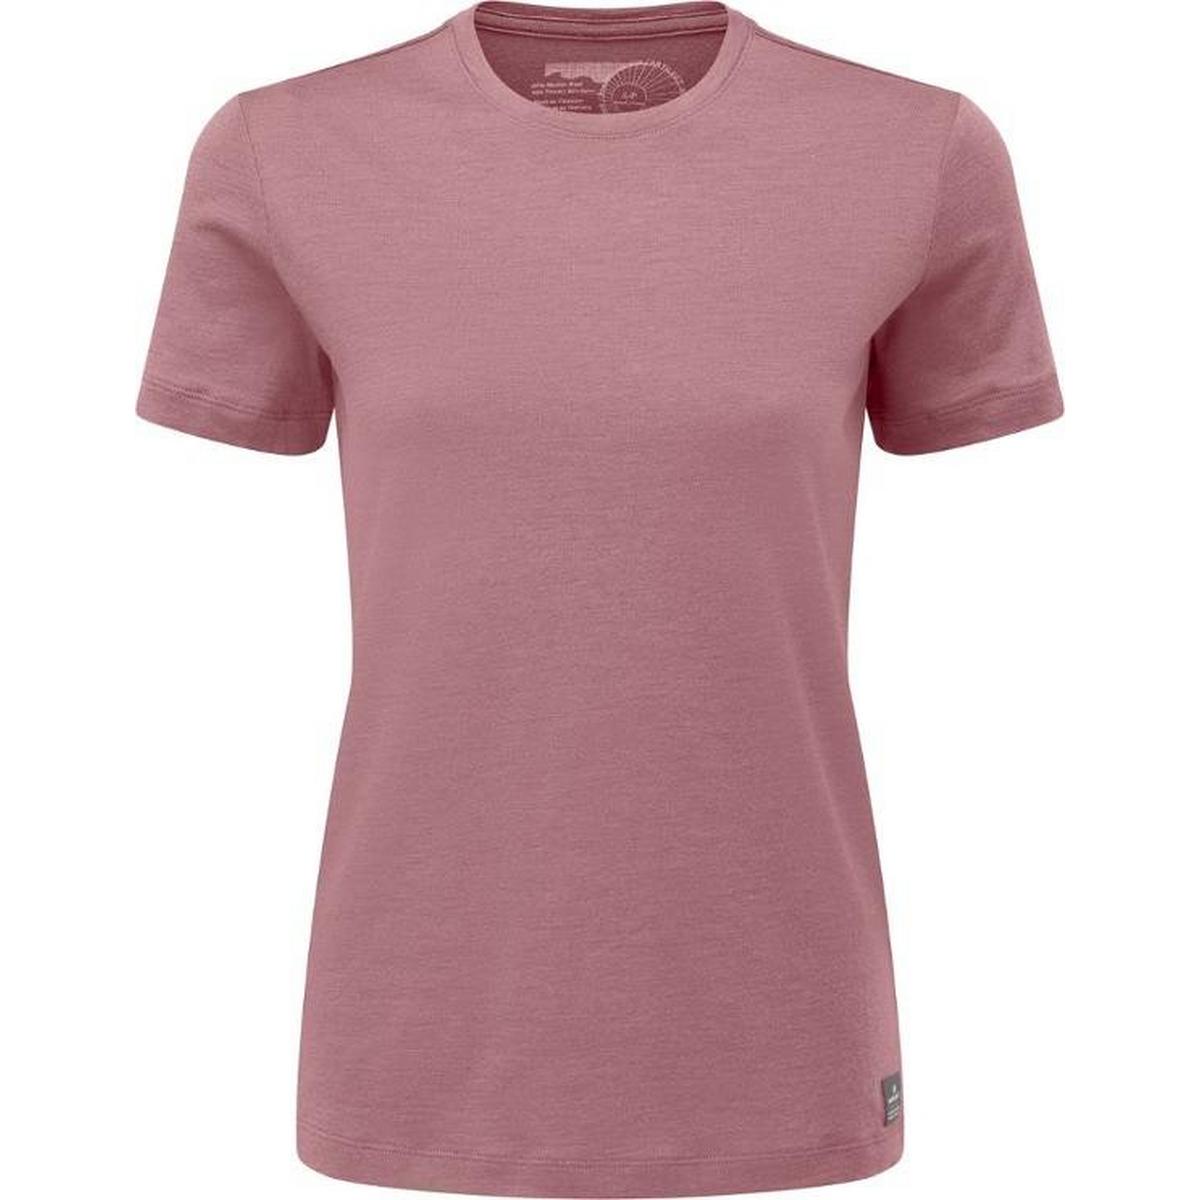 Artilect Women's Utilitee Short Sleeve T-Shirt - Rose